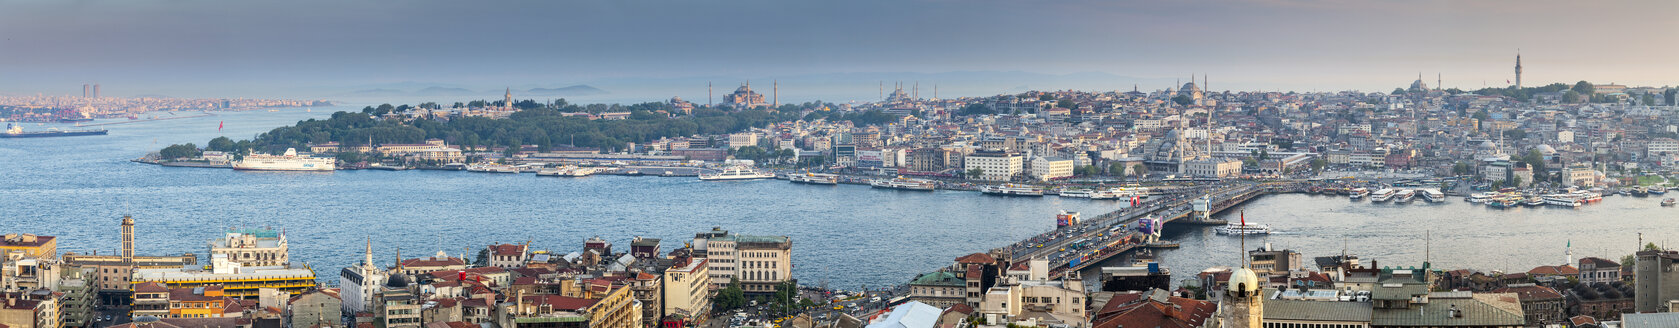 Türkei, Istanbul, Stadtbild des Eminonu-Hafens, Galata-Brücke und Neue Moschee - MDIF000033